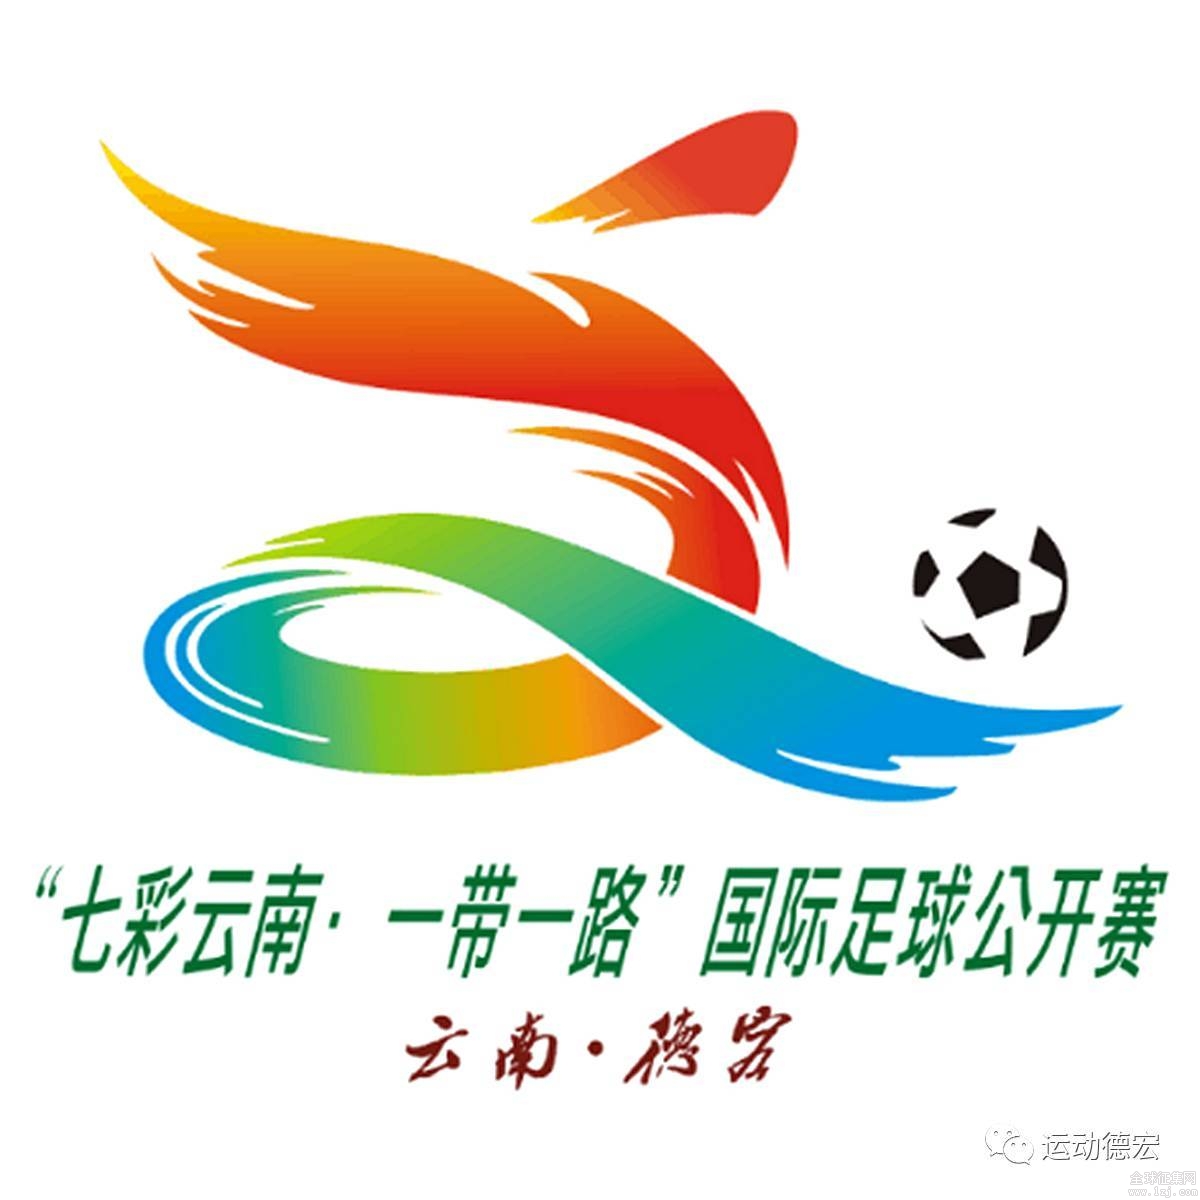 "七彩云南·一带一路"国际足球公开赛会徽,吉祥物征集